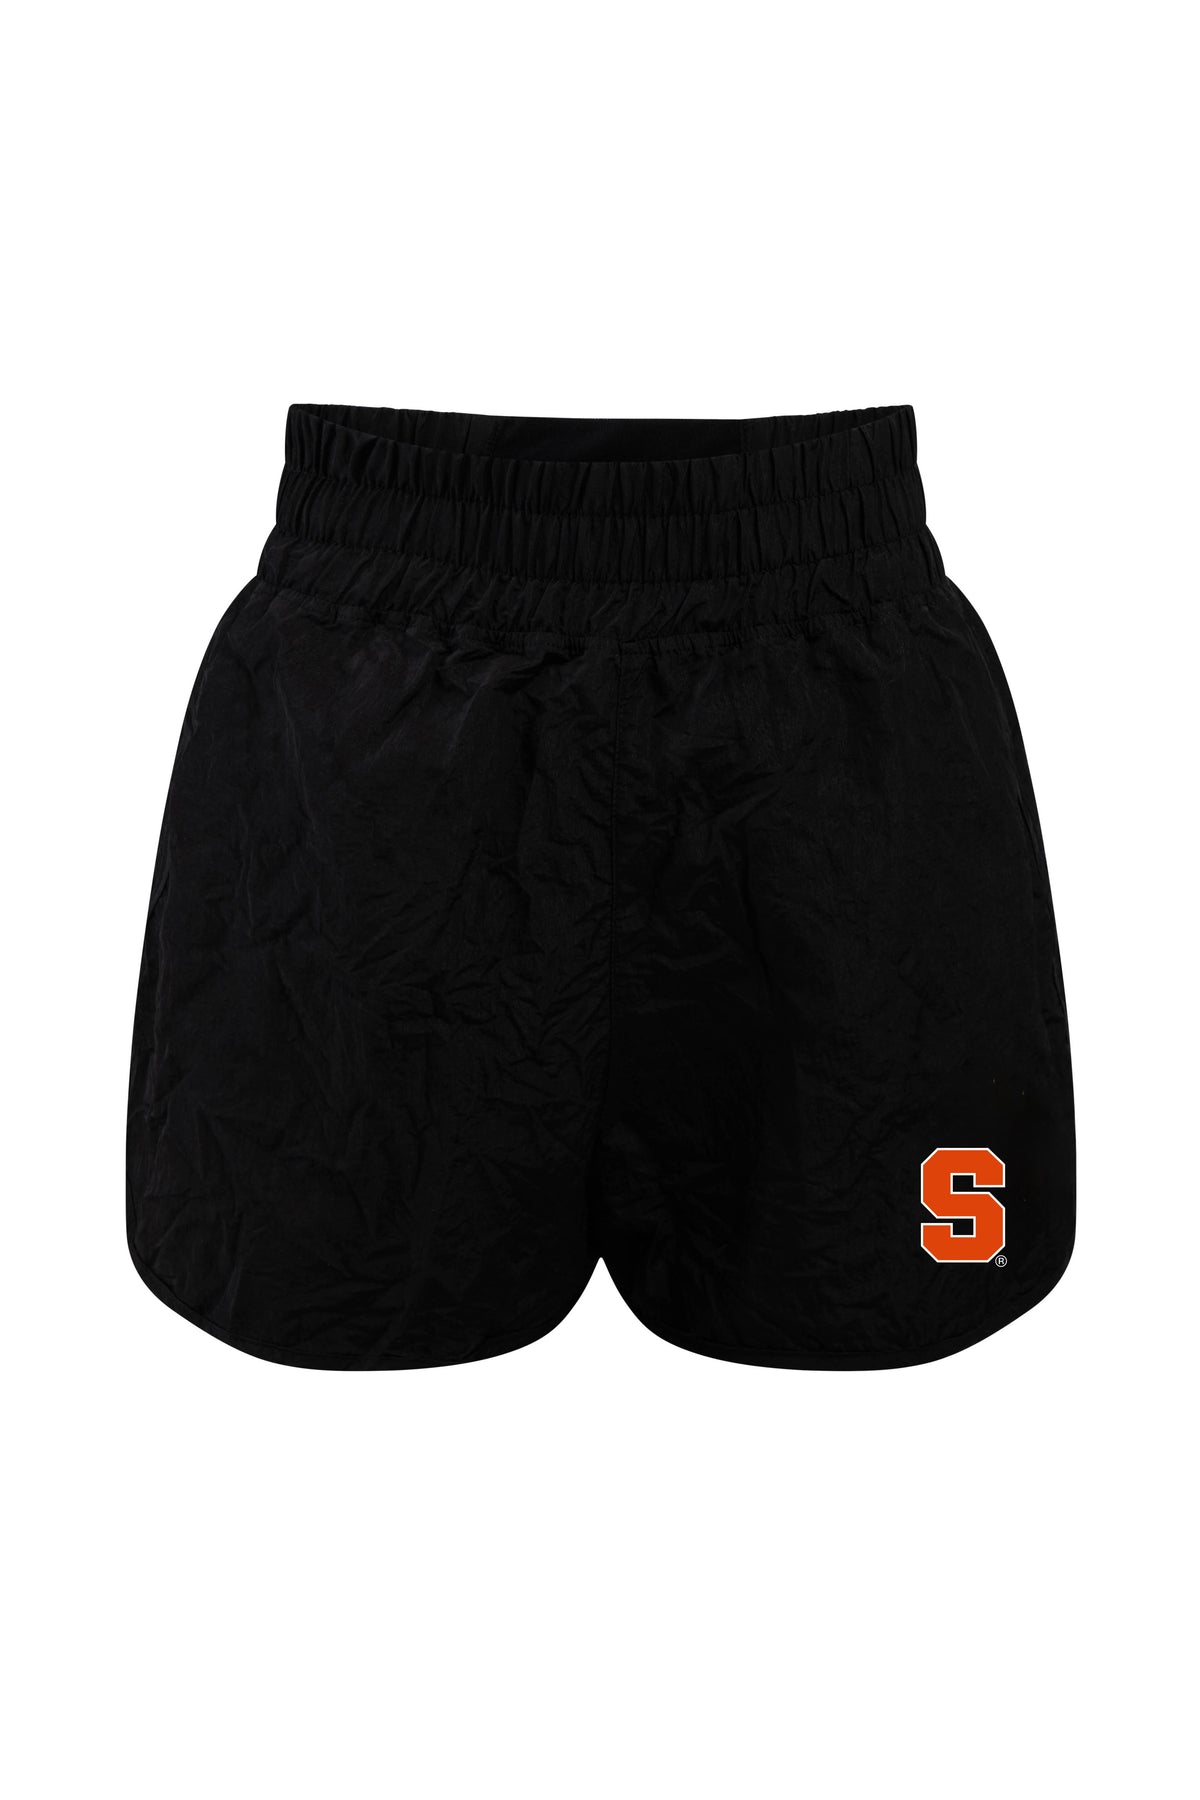 Syracuse University Boxer Short